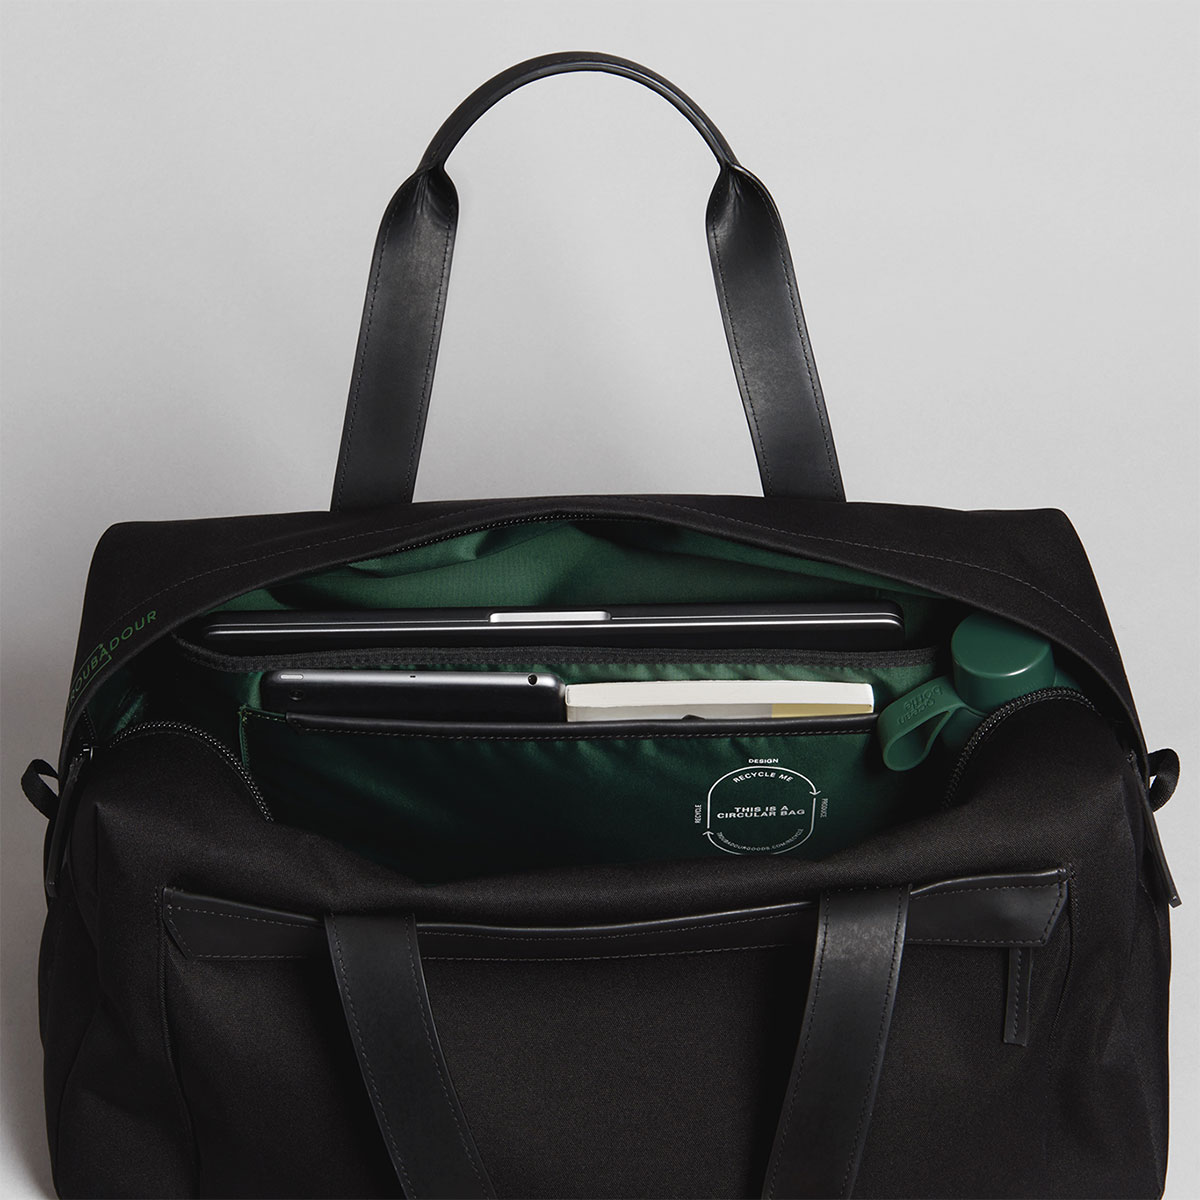 Troubadour Orbis Duffle – Best eco-friendly laptop duffle bag